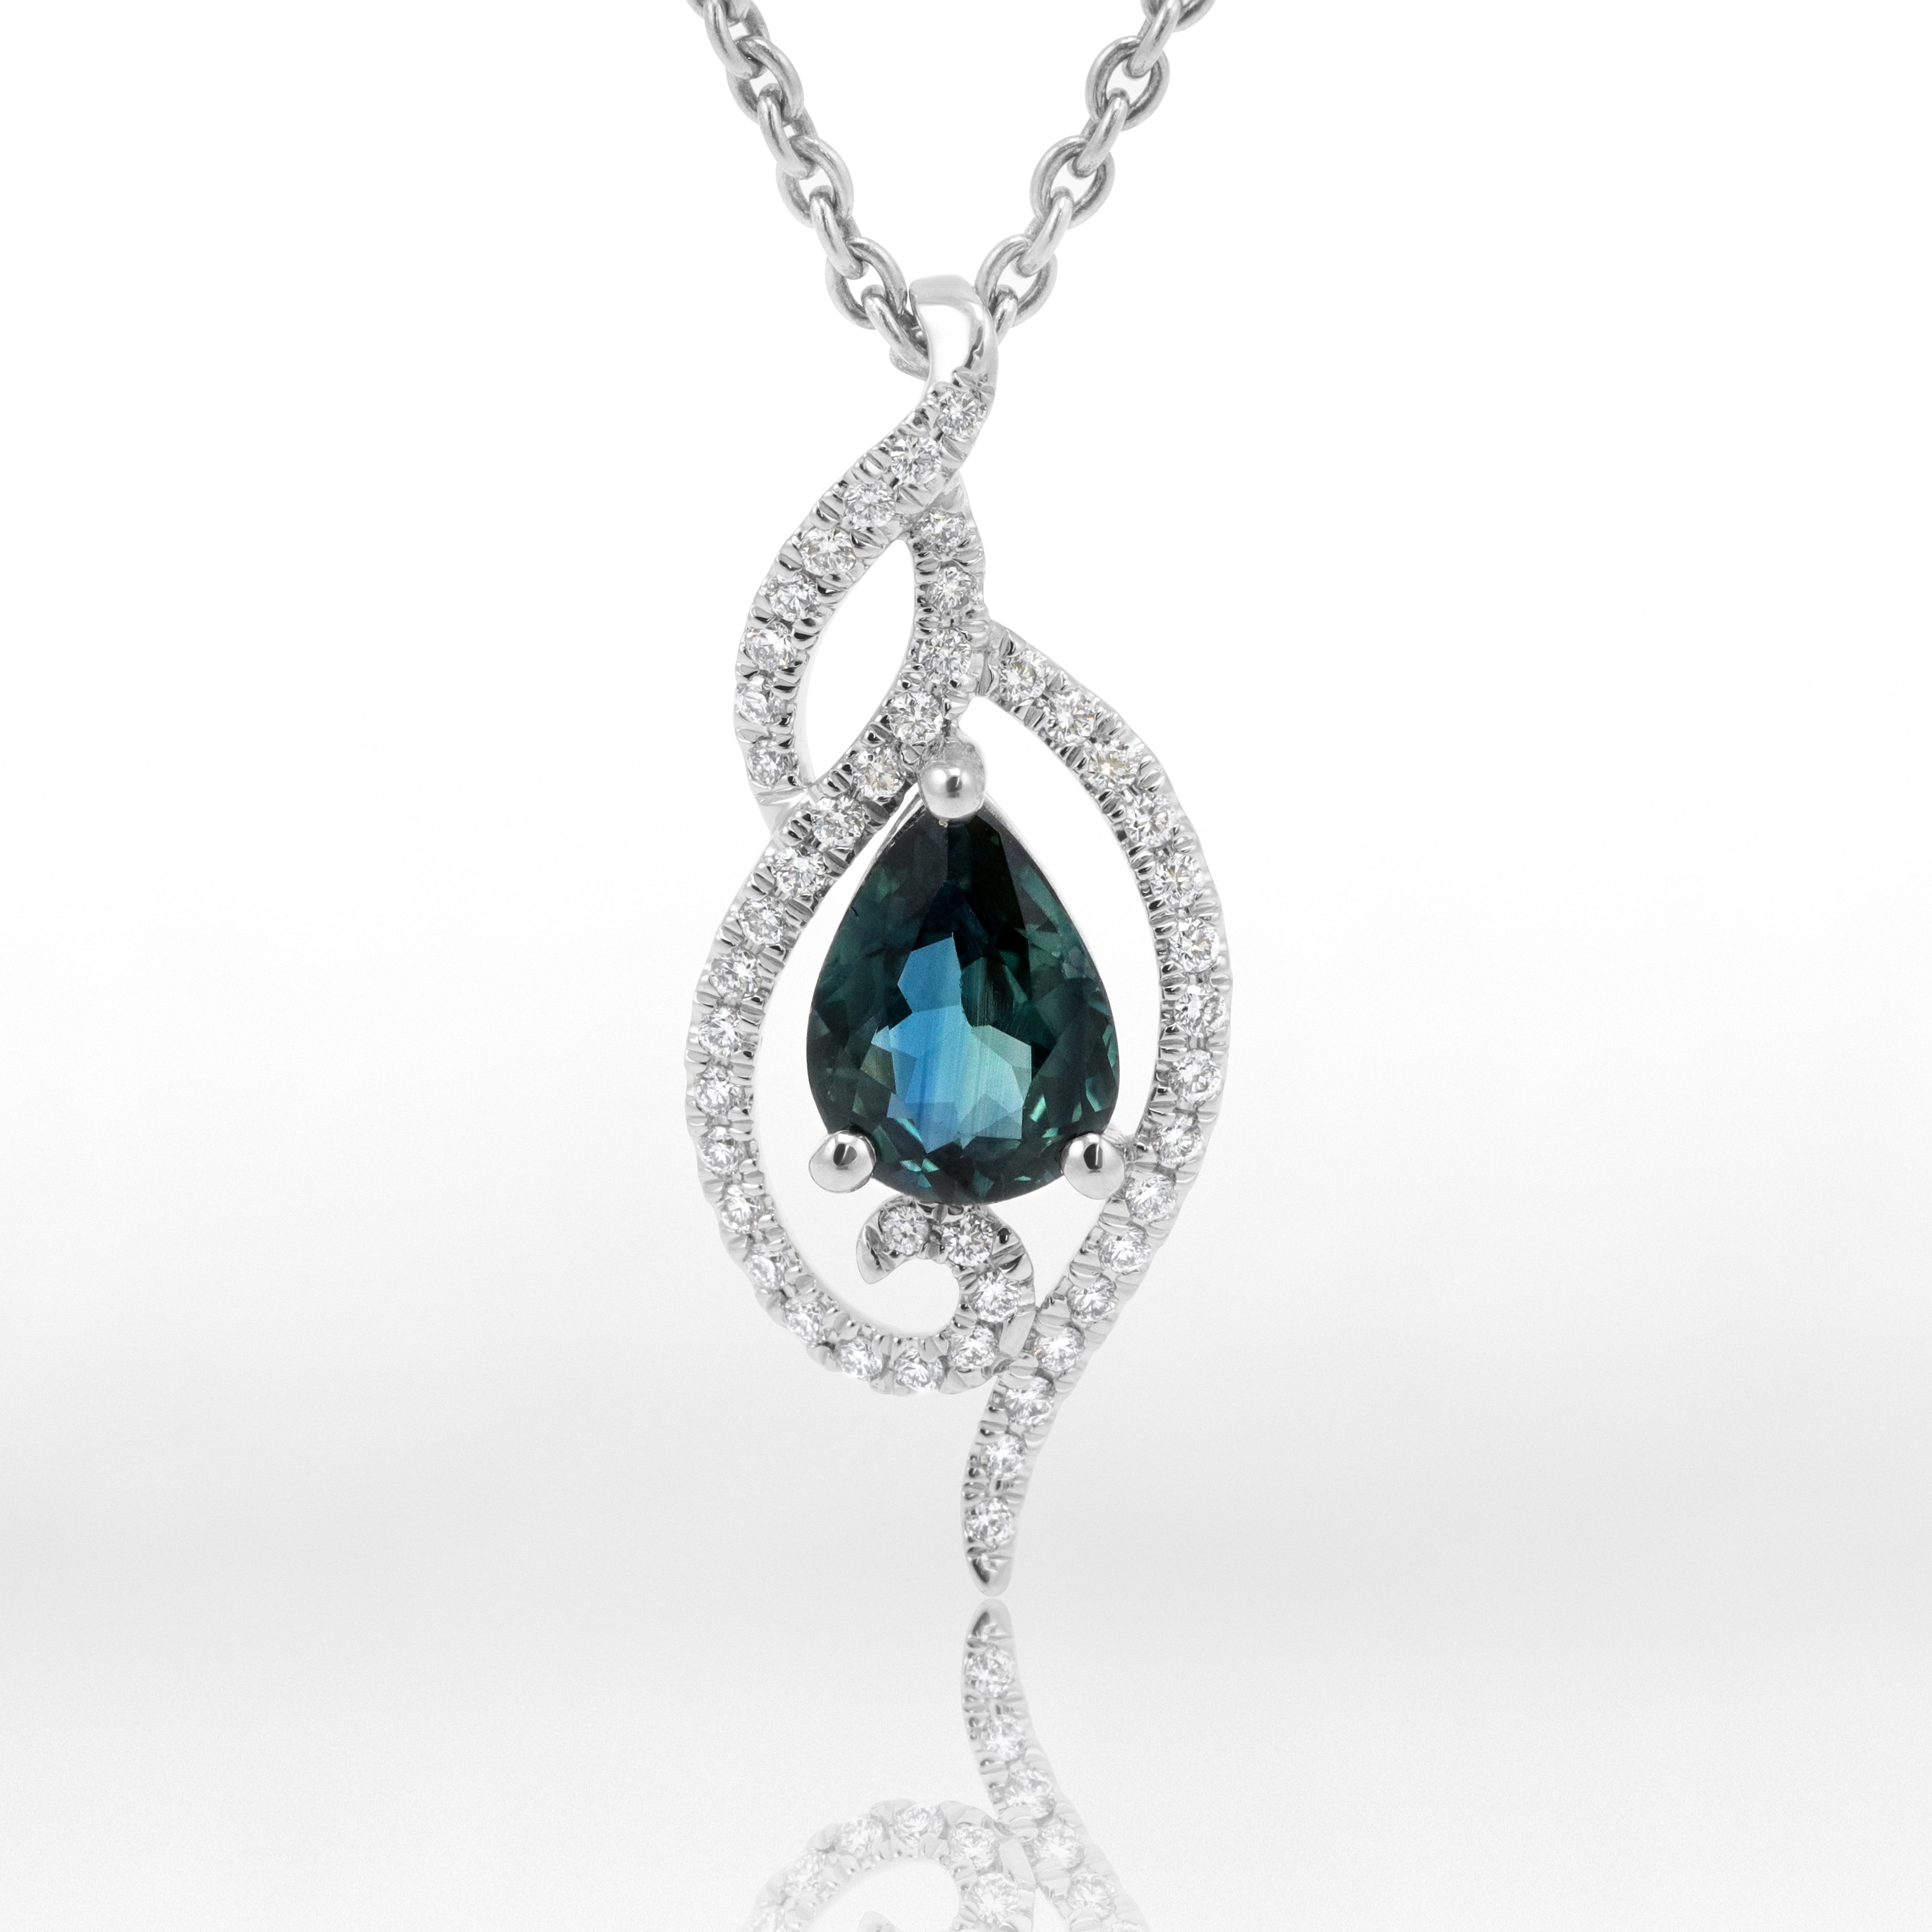 Handmade Fair Trade Montana Sapphire Necklaces | Jewelry, Sapphire necklace,  Montana sapphire